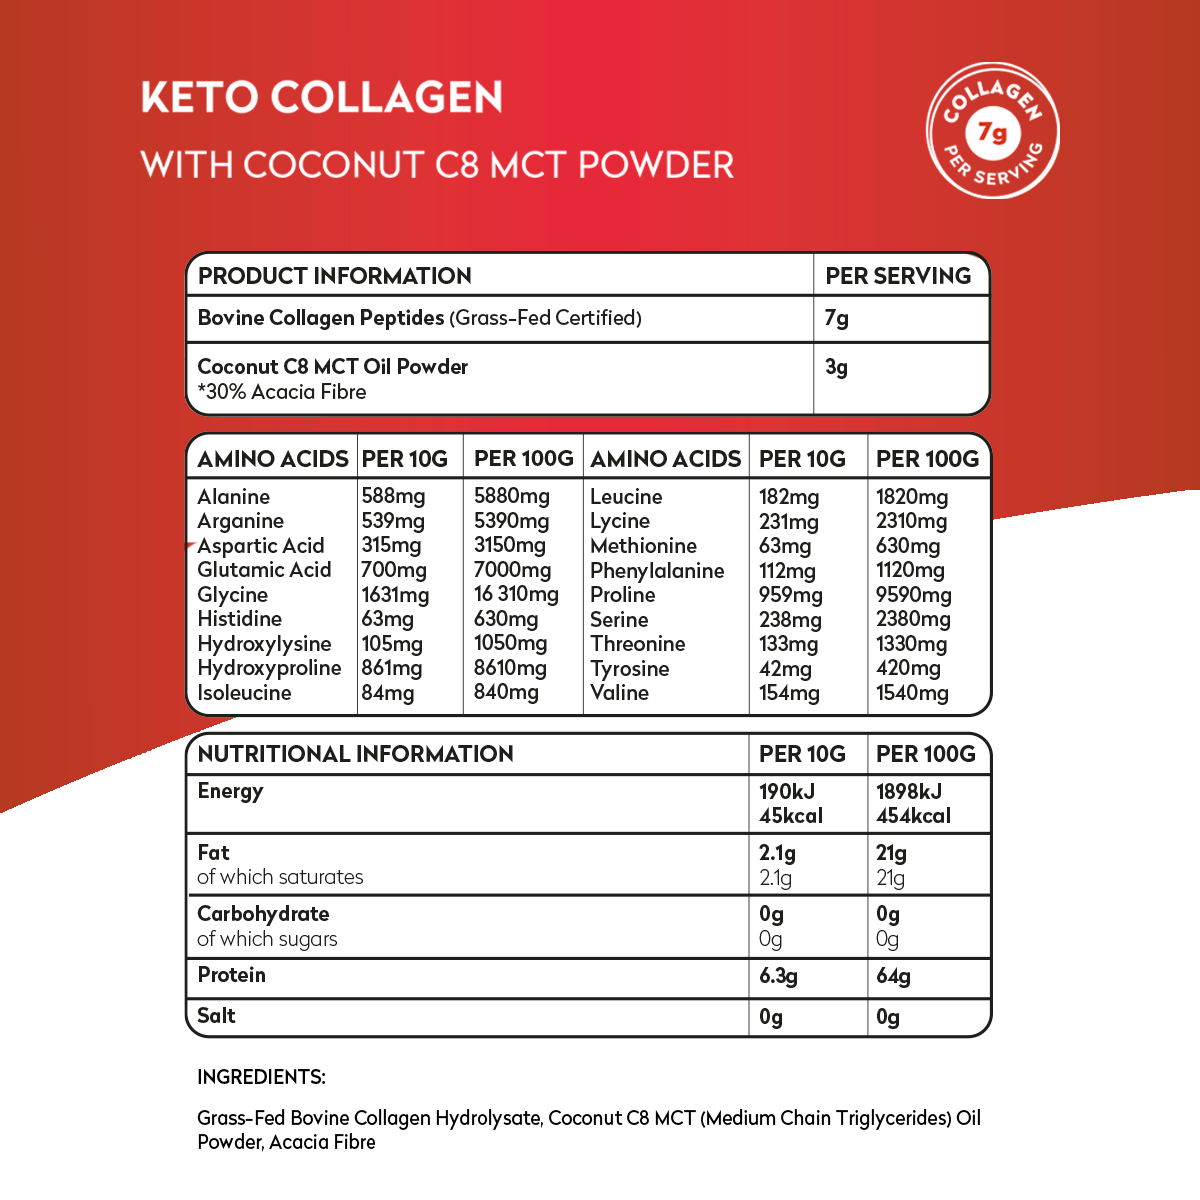 C8 MCT Powder & Keto Collagen